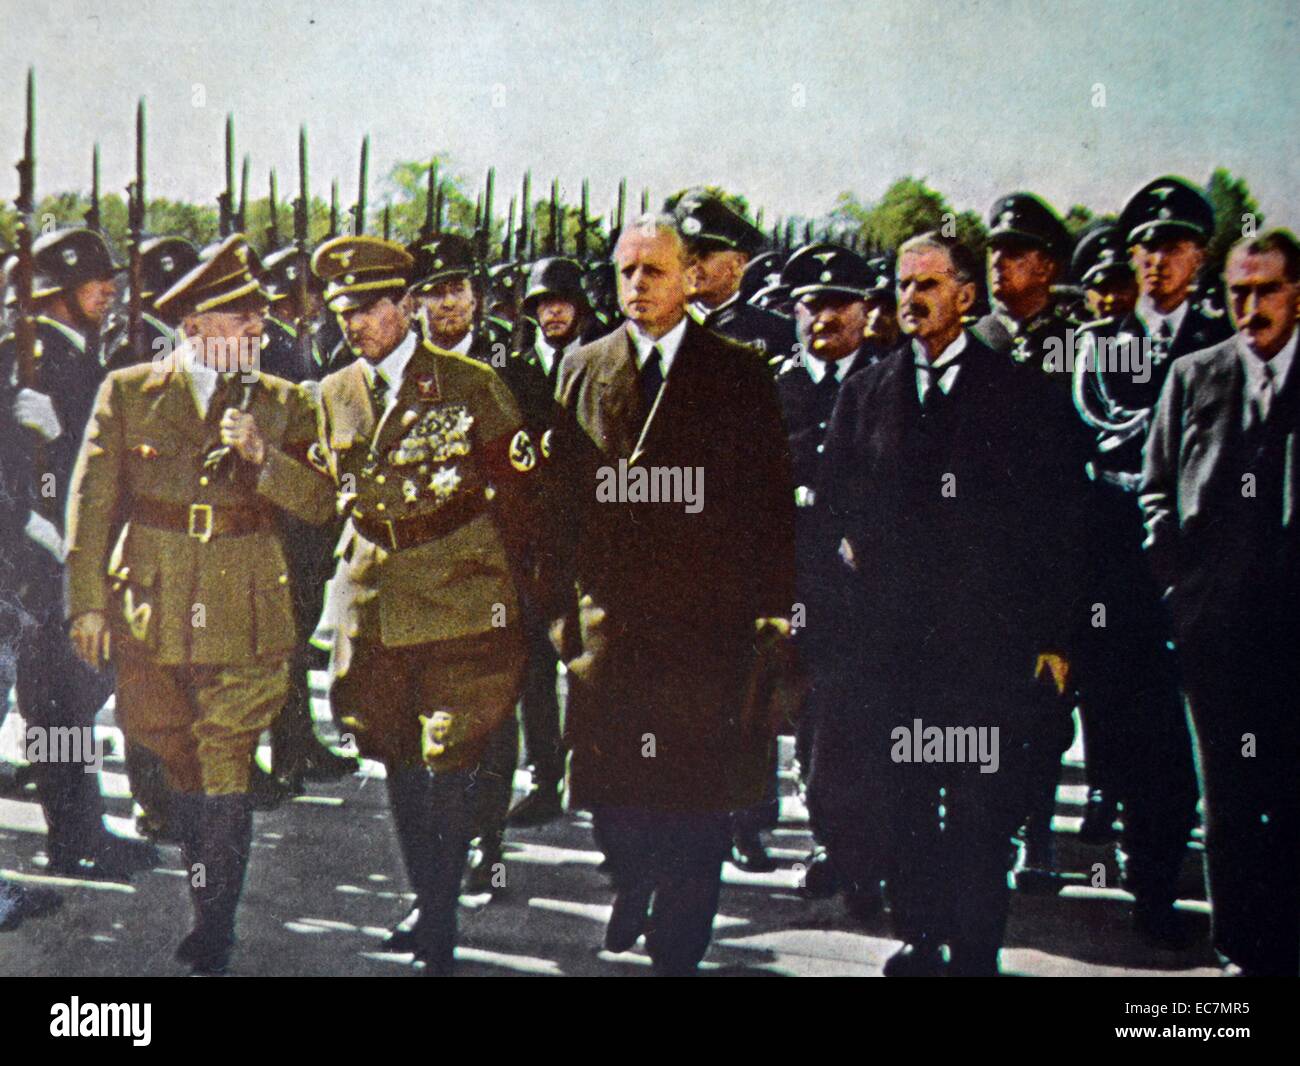 Le Premier ministre britannique Neville Chamberlainin Munich à conclure la paix pour notre temps." (accords de Munich) avec l'Allemagne nazie. 30 septembre 1938. Vu avec von Ribbentrop (Ministre des affaires étrangères allemand) et Arthur Henderson (Ambassadeur britannique) Banque D'Images